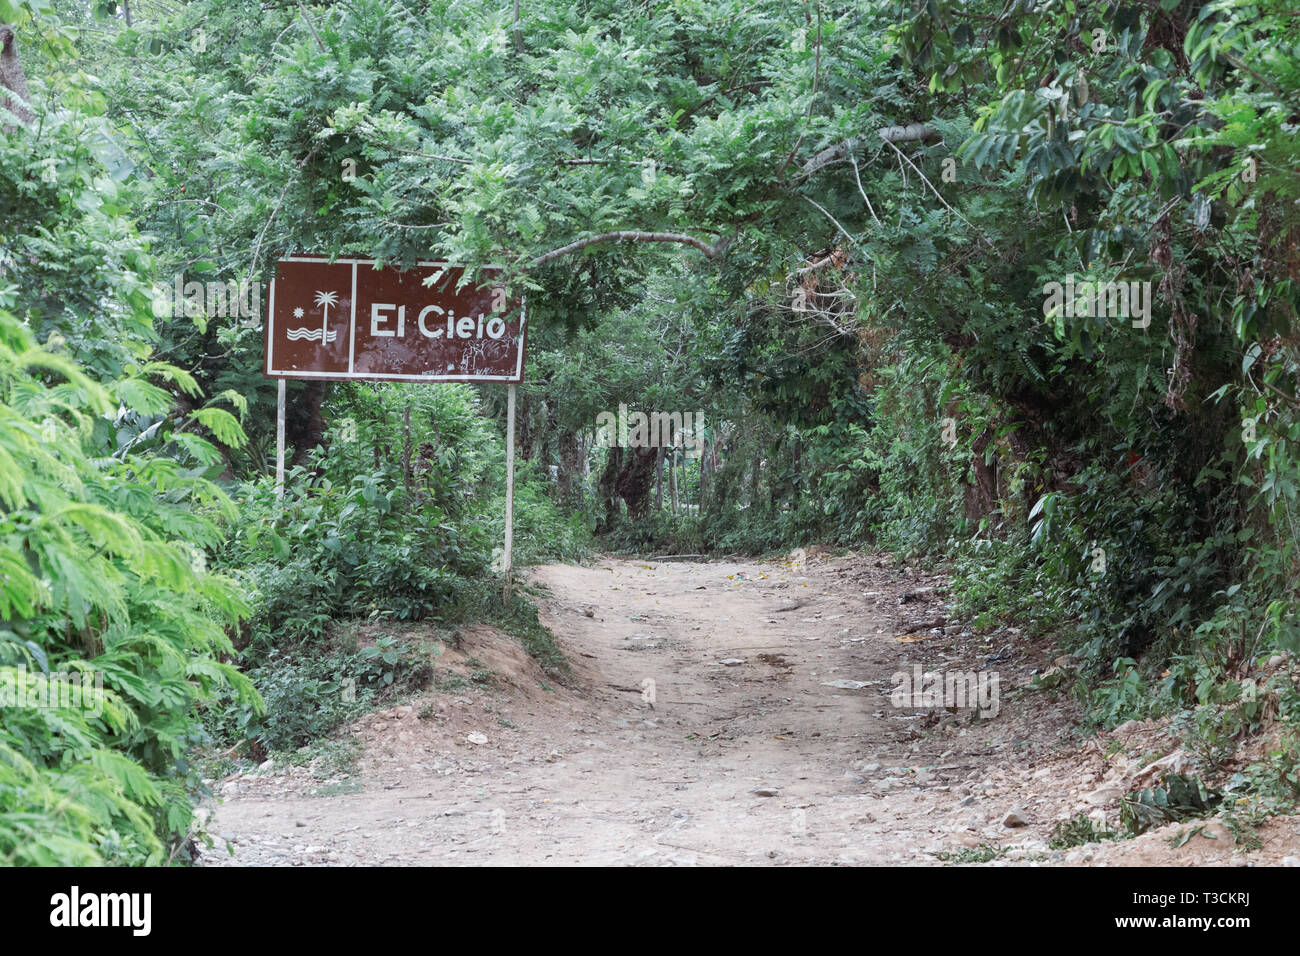 Un segno che indica la via per la Cascada El Cielo le cascate di Capurganá, Acandí, Choco, Colombia. Capurgana giace sulla costa dei Caraibi. Foto Stock